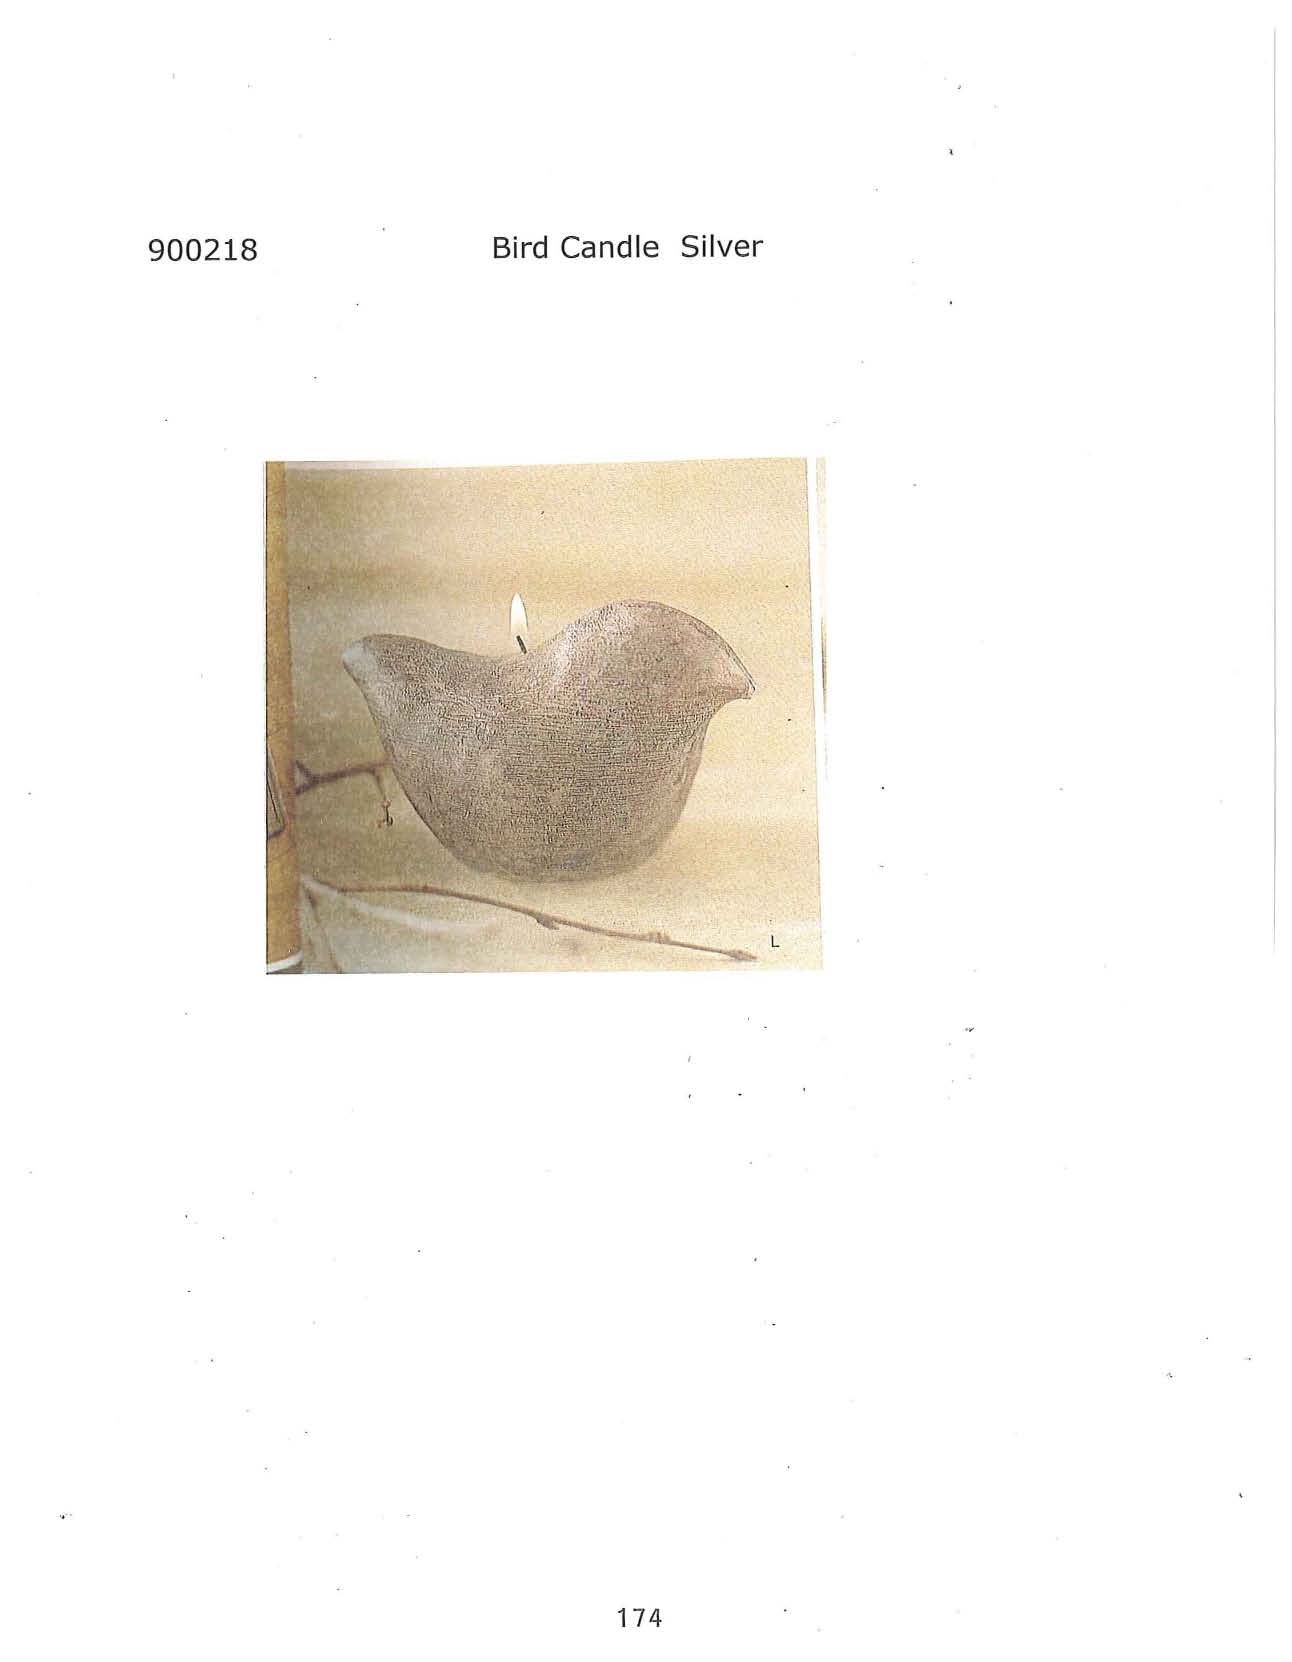 Bird Candle - Silver